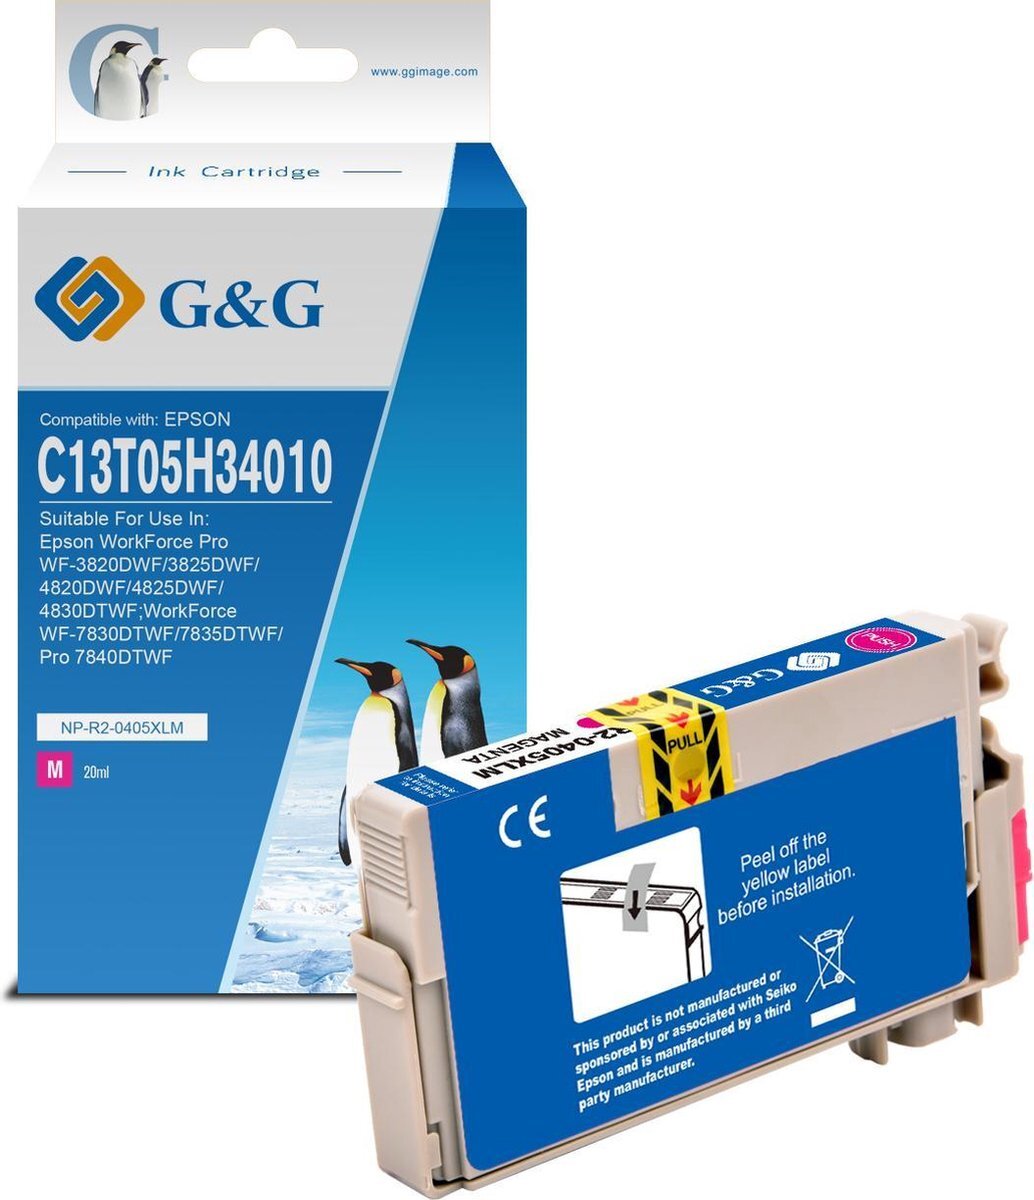 G&G Patent compatible inkcartrige for Epson 405XL Magenta - 5.3 ml. meer dan origineel